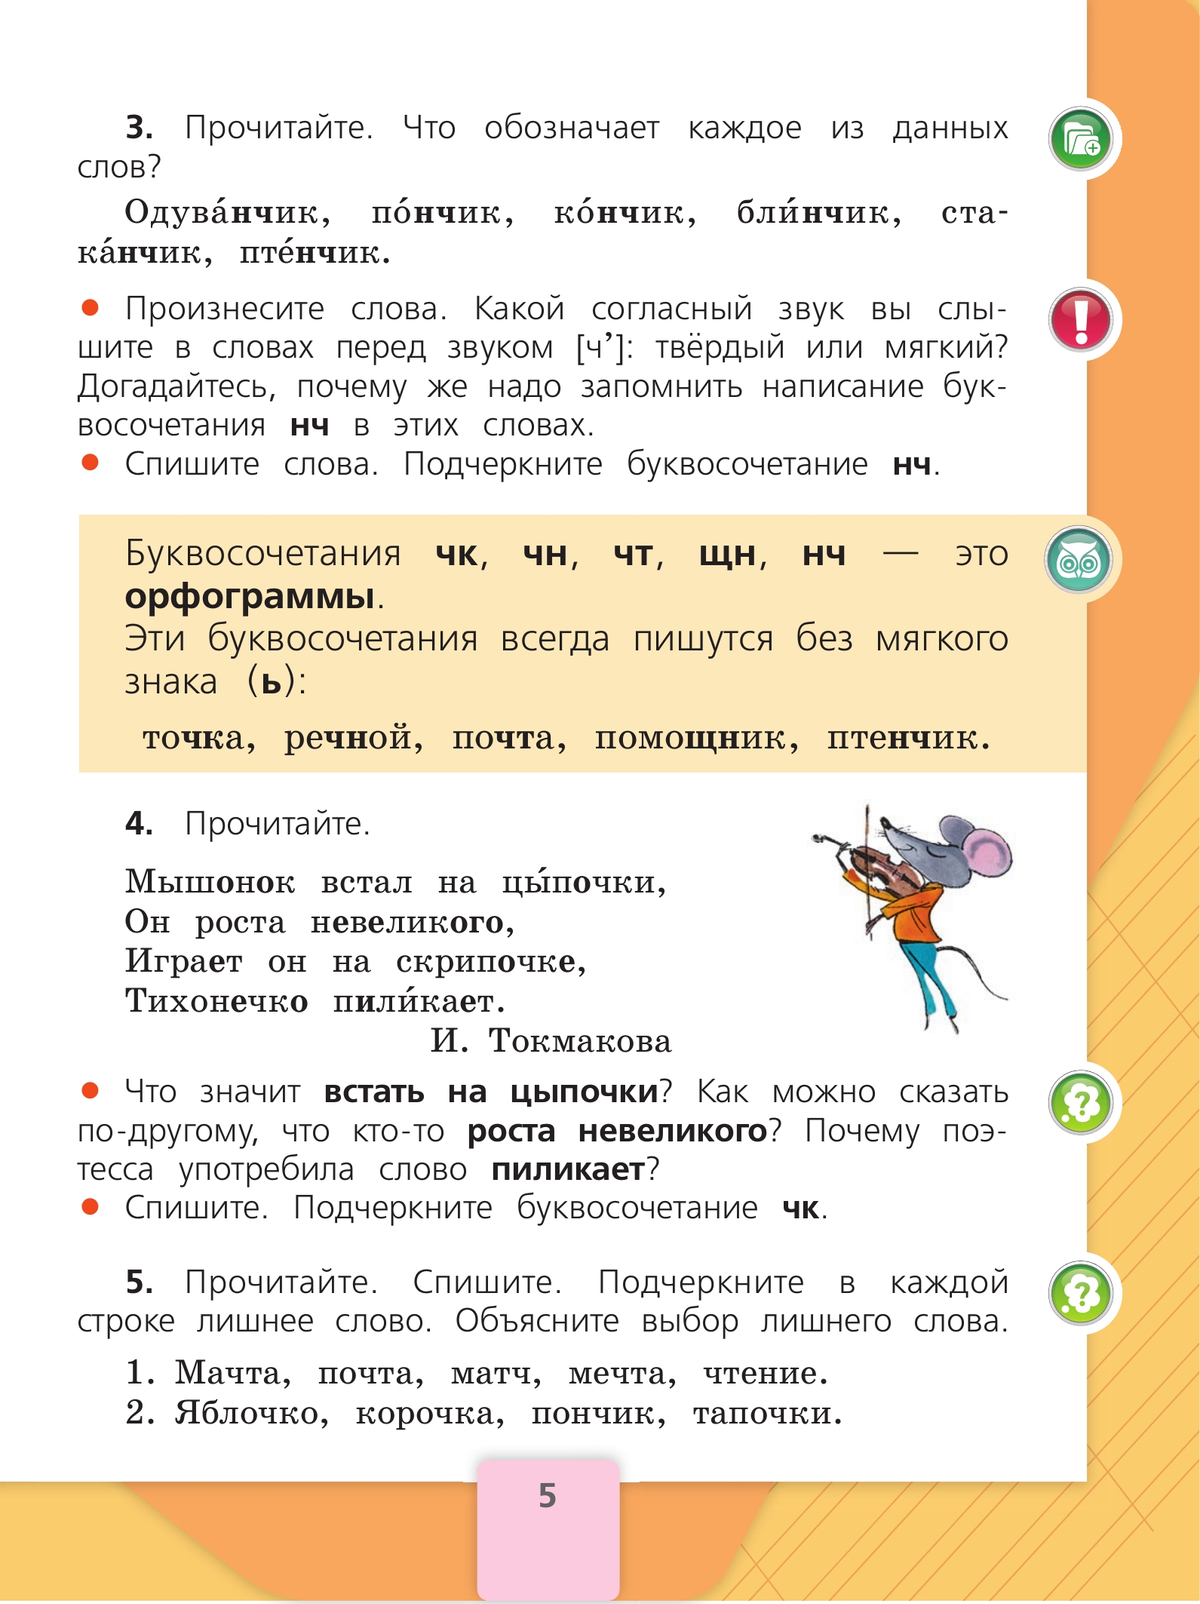 Русский язык. 2 класс. Учебник. В 2 ч. Часть 2 4